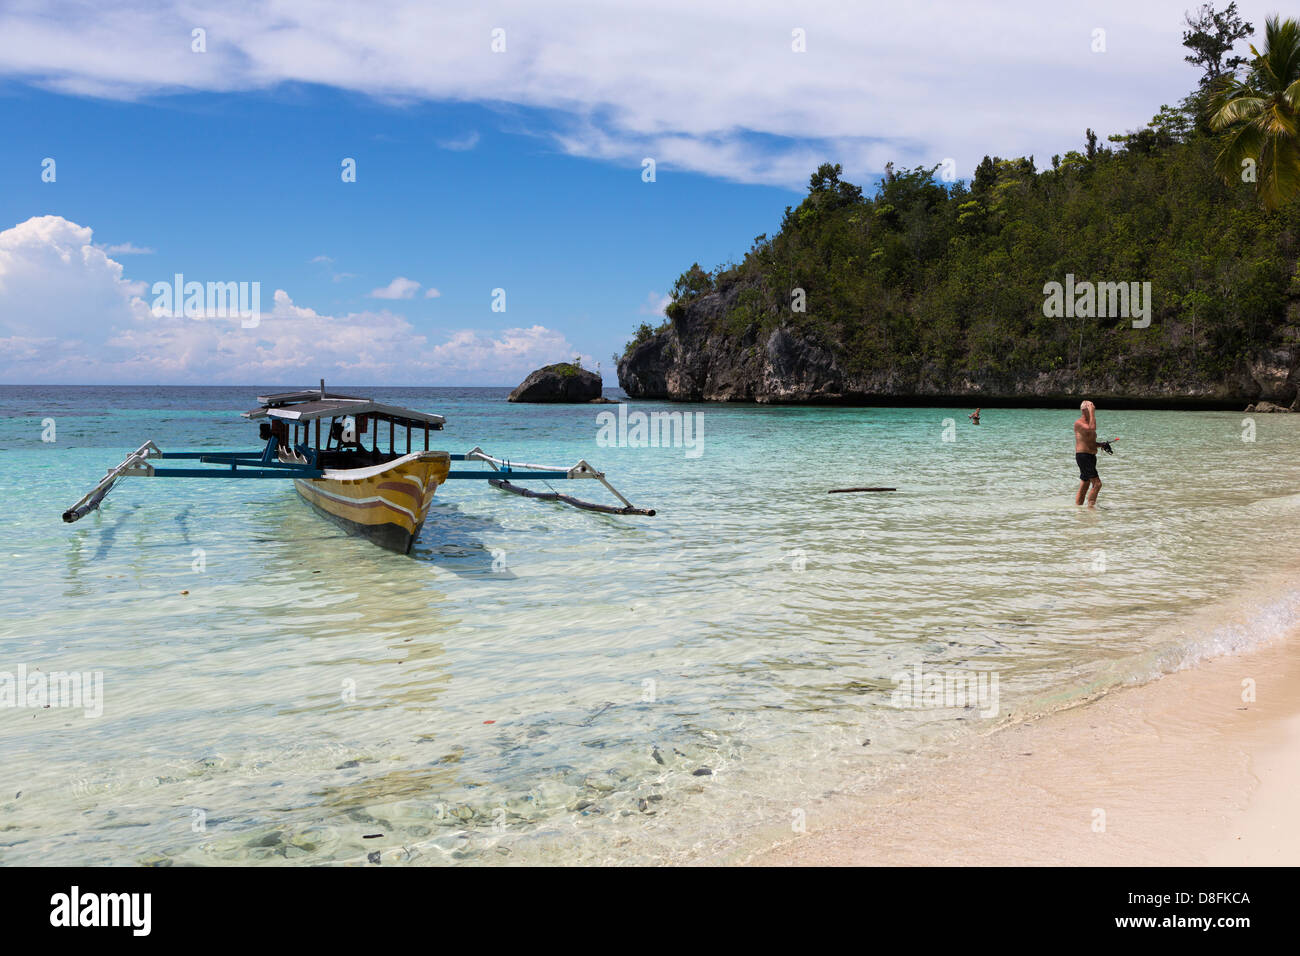 Un touriste sur une plage isolée dans le Togians île dans l'île de Sulawesi, Indonésie Banque D'Images